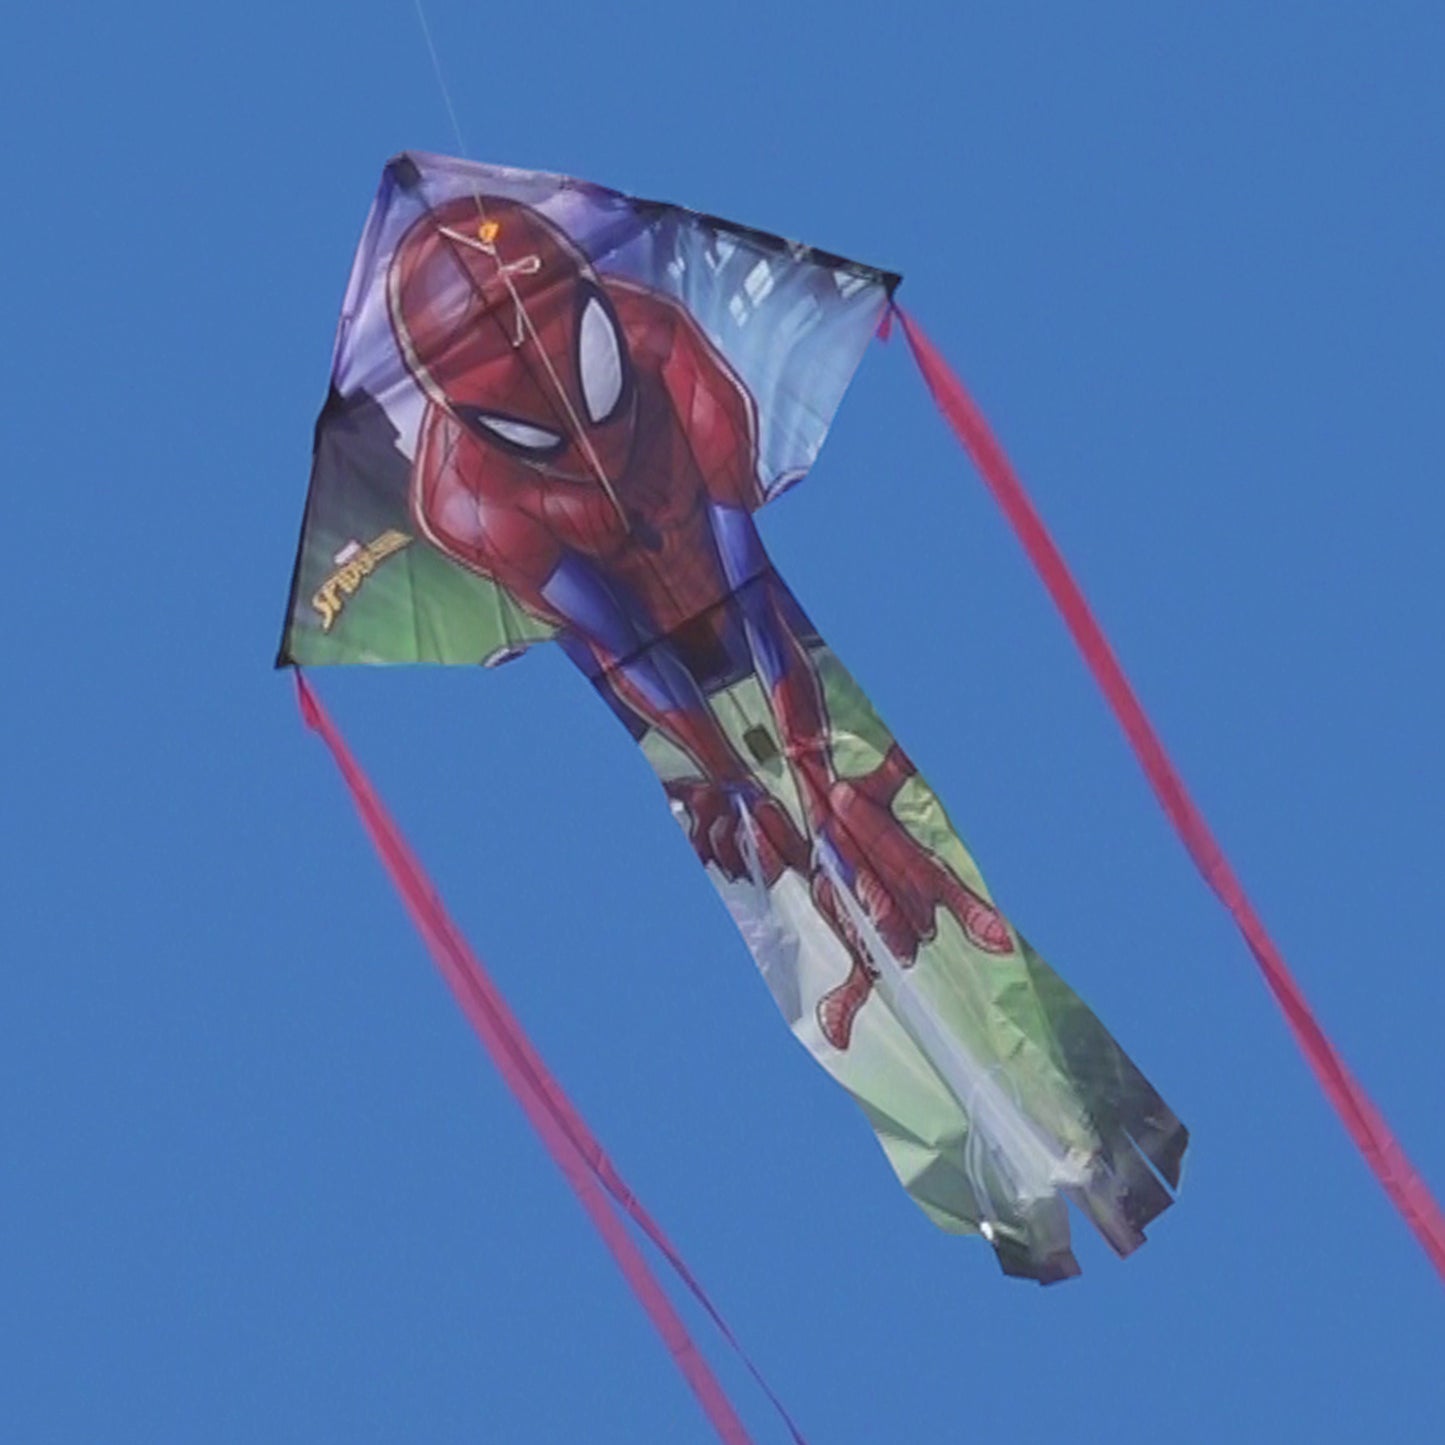 X Kites skyflier spider man nylon kite flying